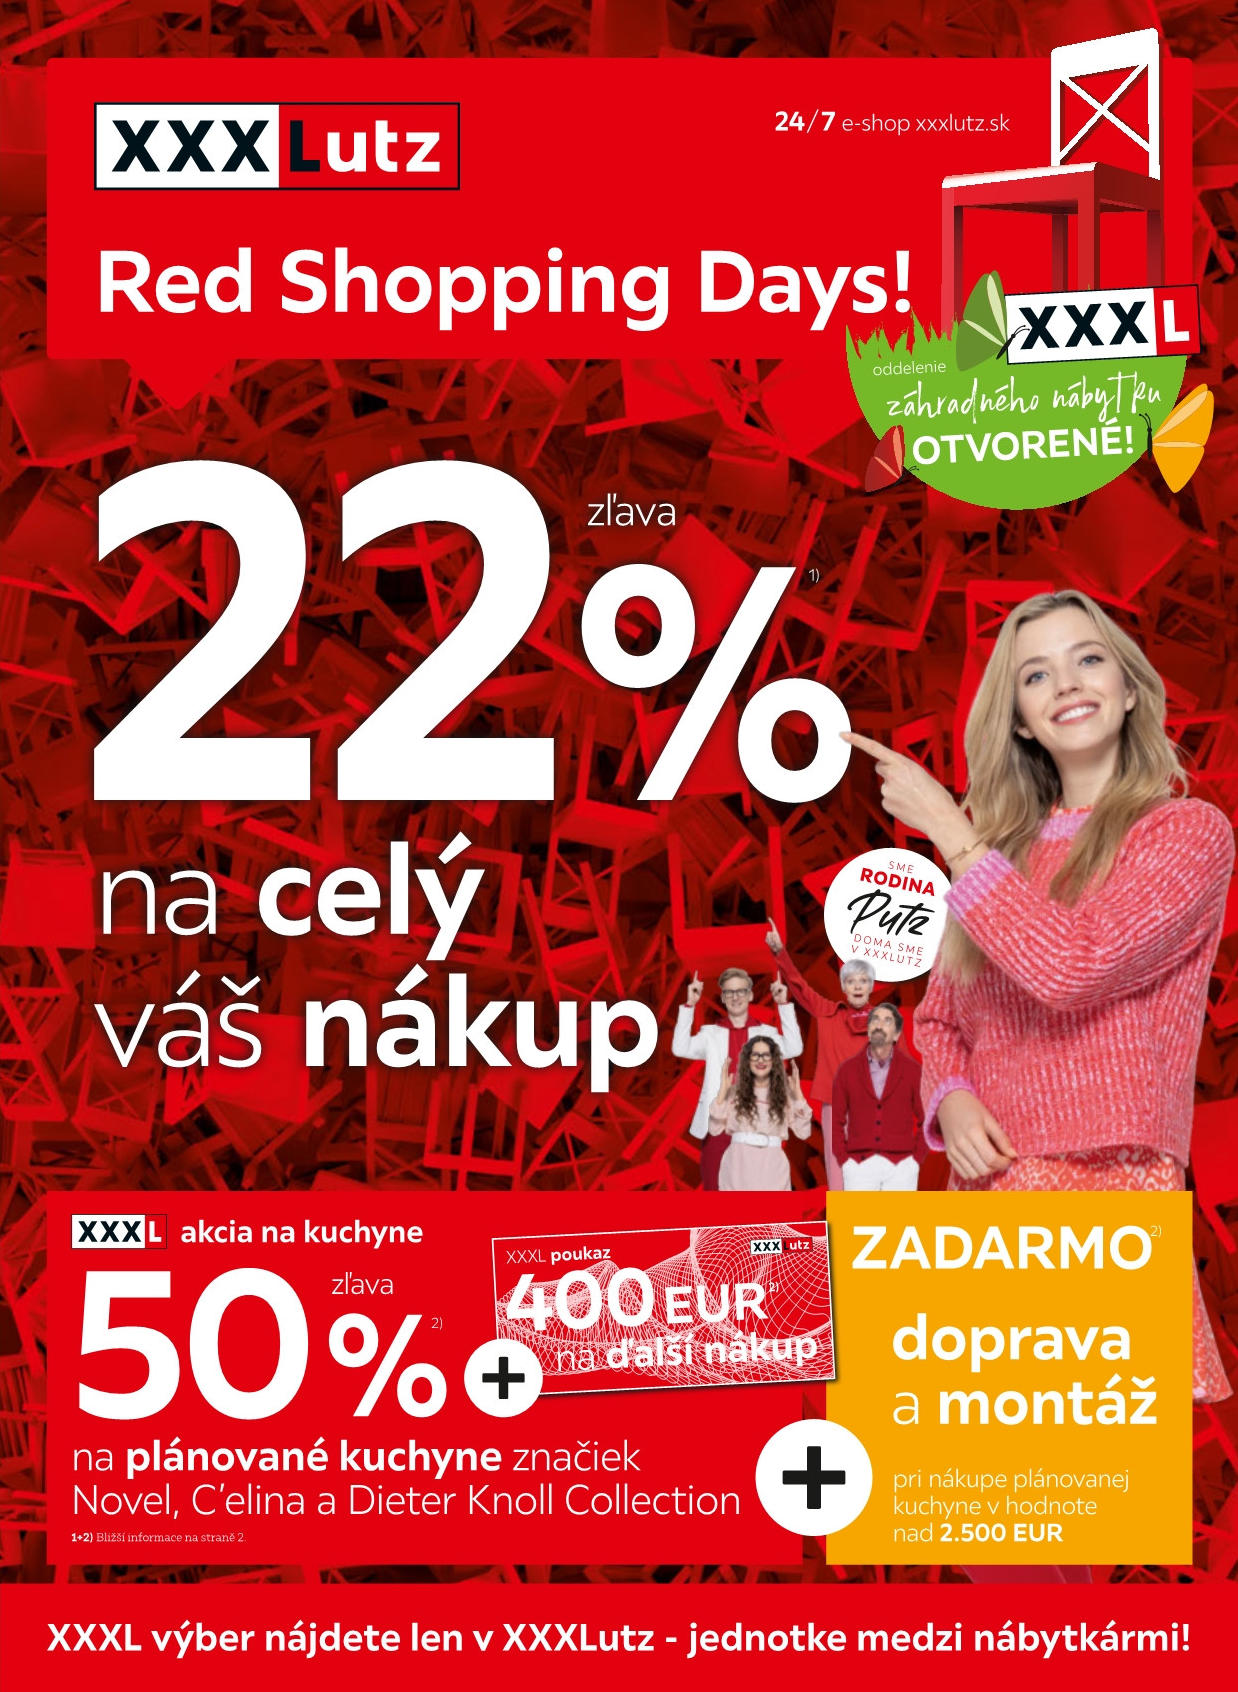 Red Shopping Days - zľava 22 % na celý váš nákup